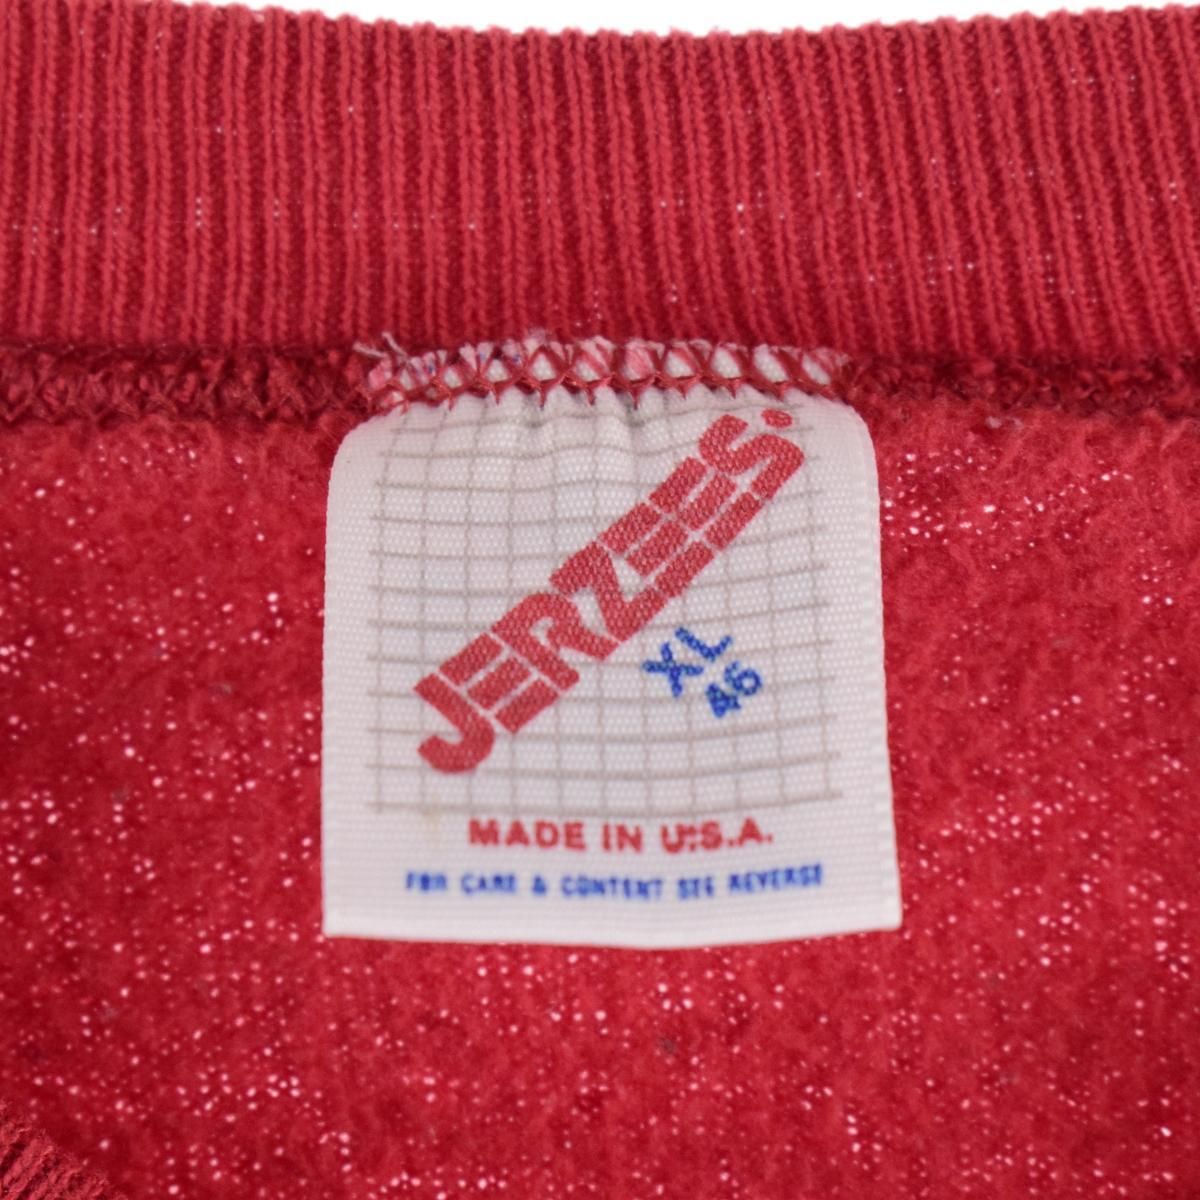 80年代 ジャージーズ Jerzees カレッジスウェットシャツ トレーナー USA製 メンズL ヴィンテージ /eaa324282